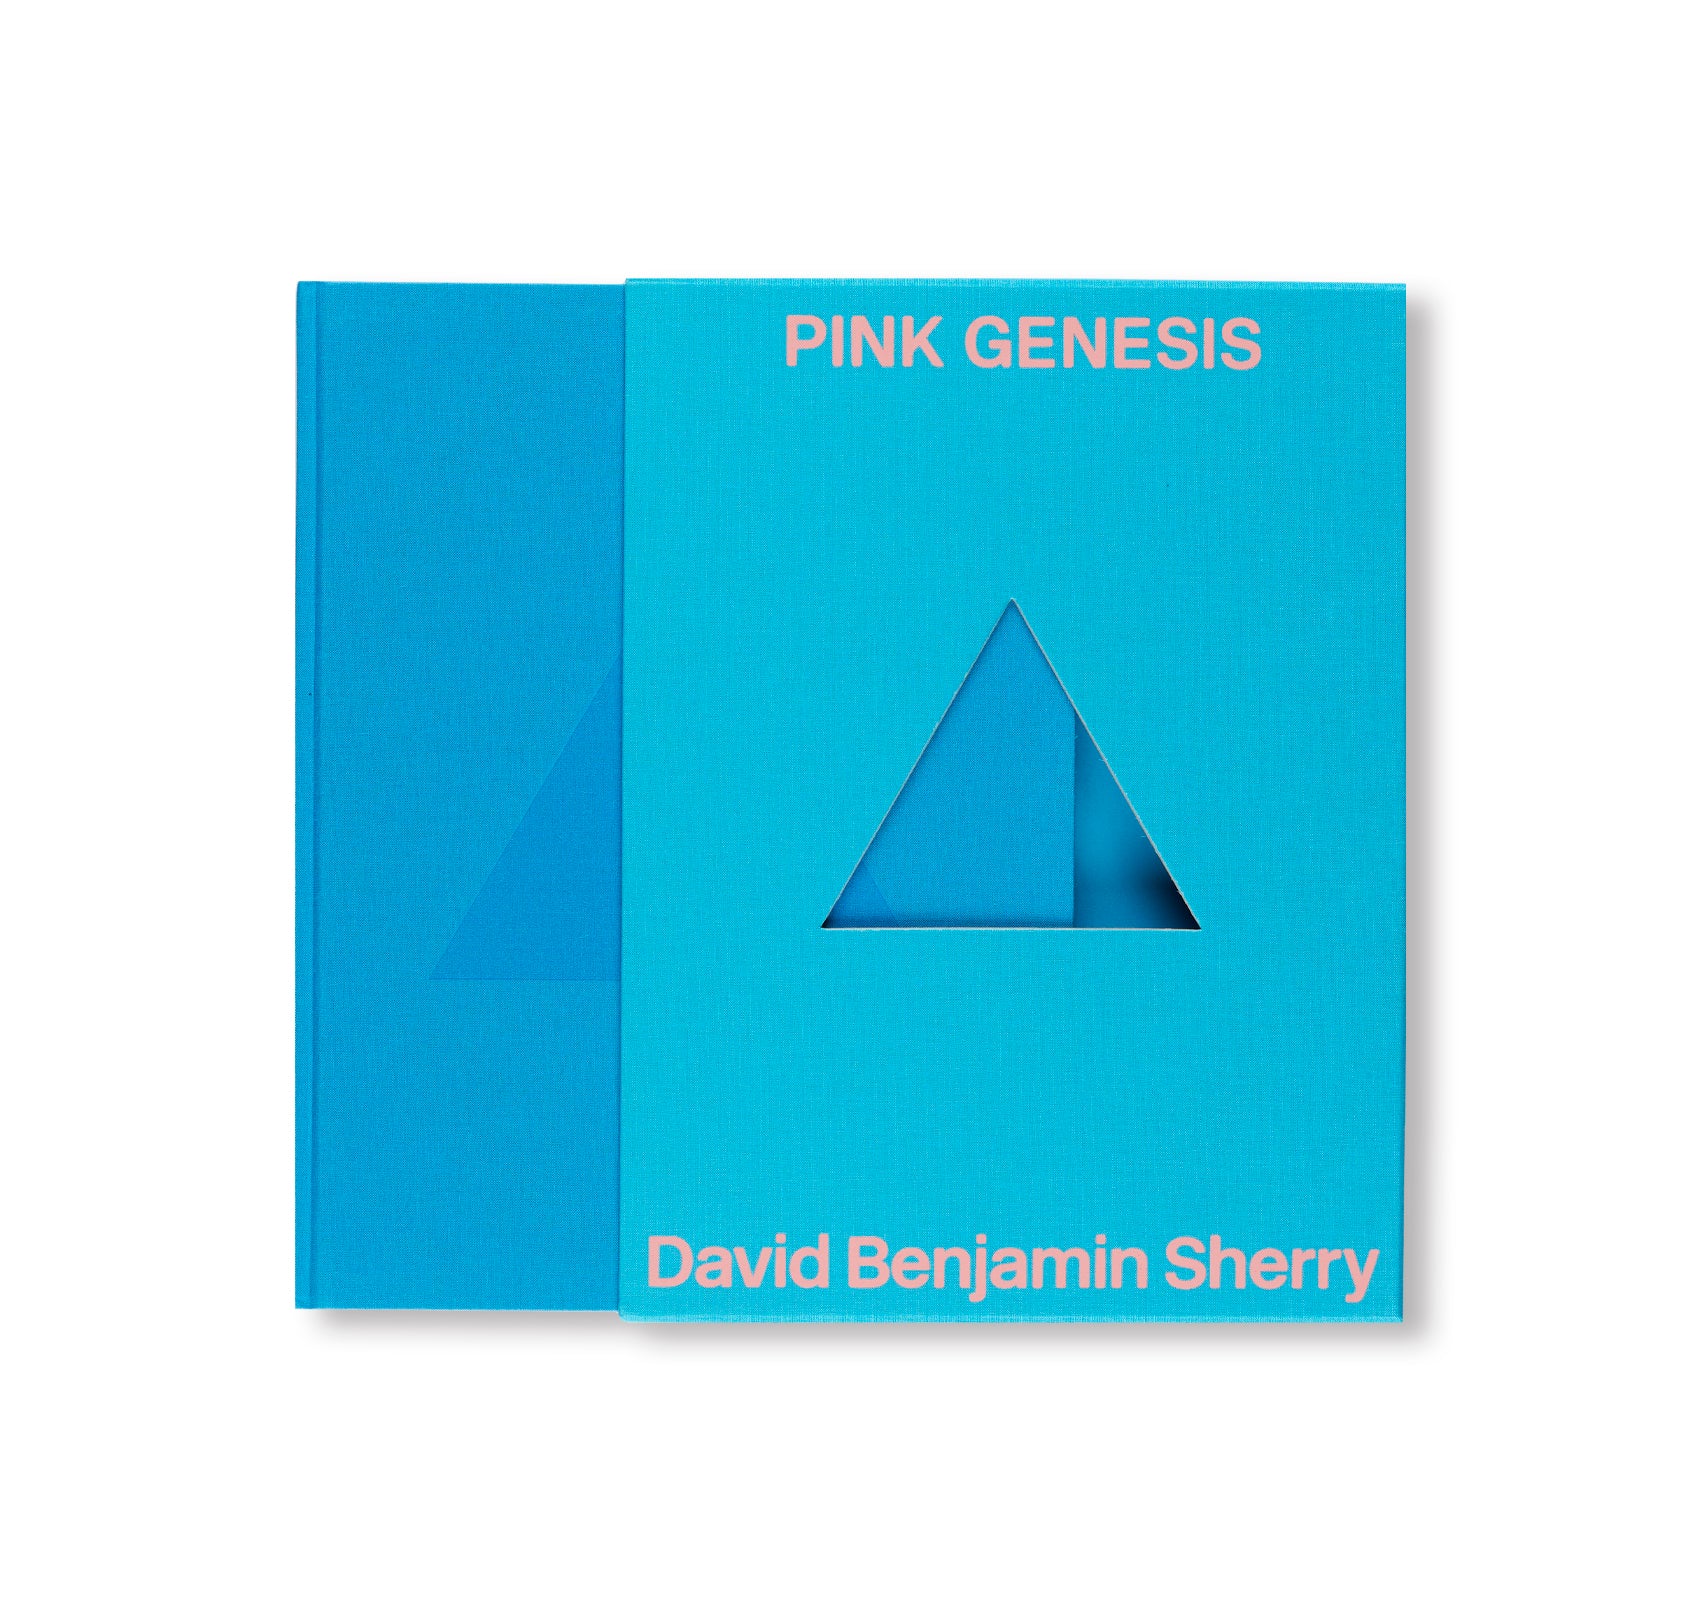 PINK GENESIS by David Benjamin Sherry